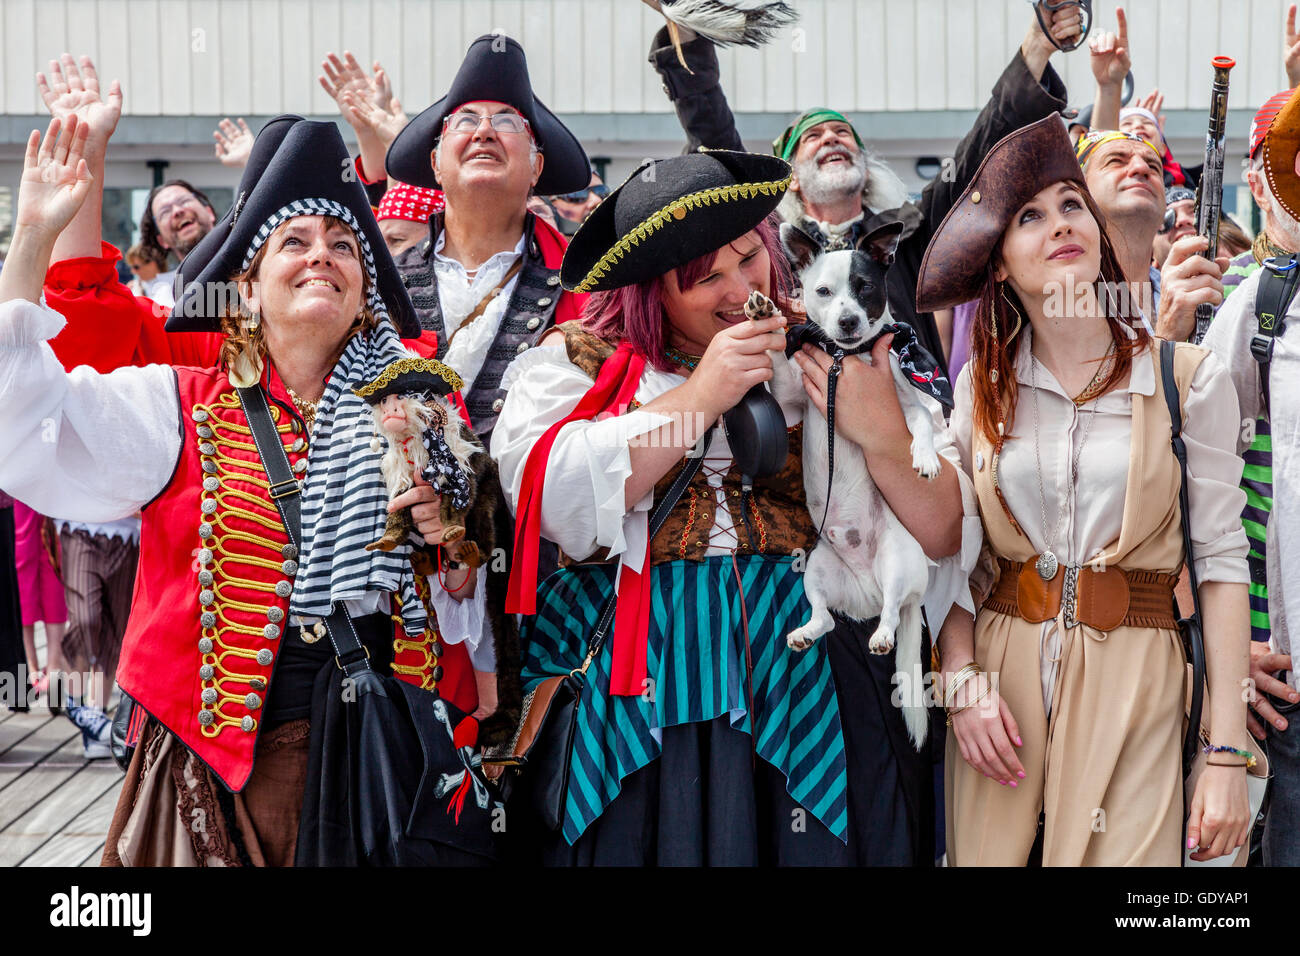 Les gens vêtus de costumes de pirates posent pour une photo de groupe sur la jetée de Hastings Hastings durant la journée Pirate Festival, Hastings, Royaume-Uni Banque D'Images